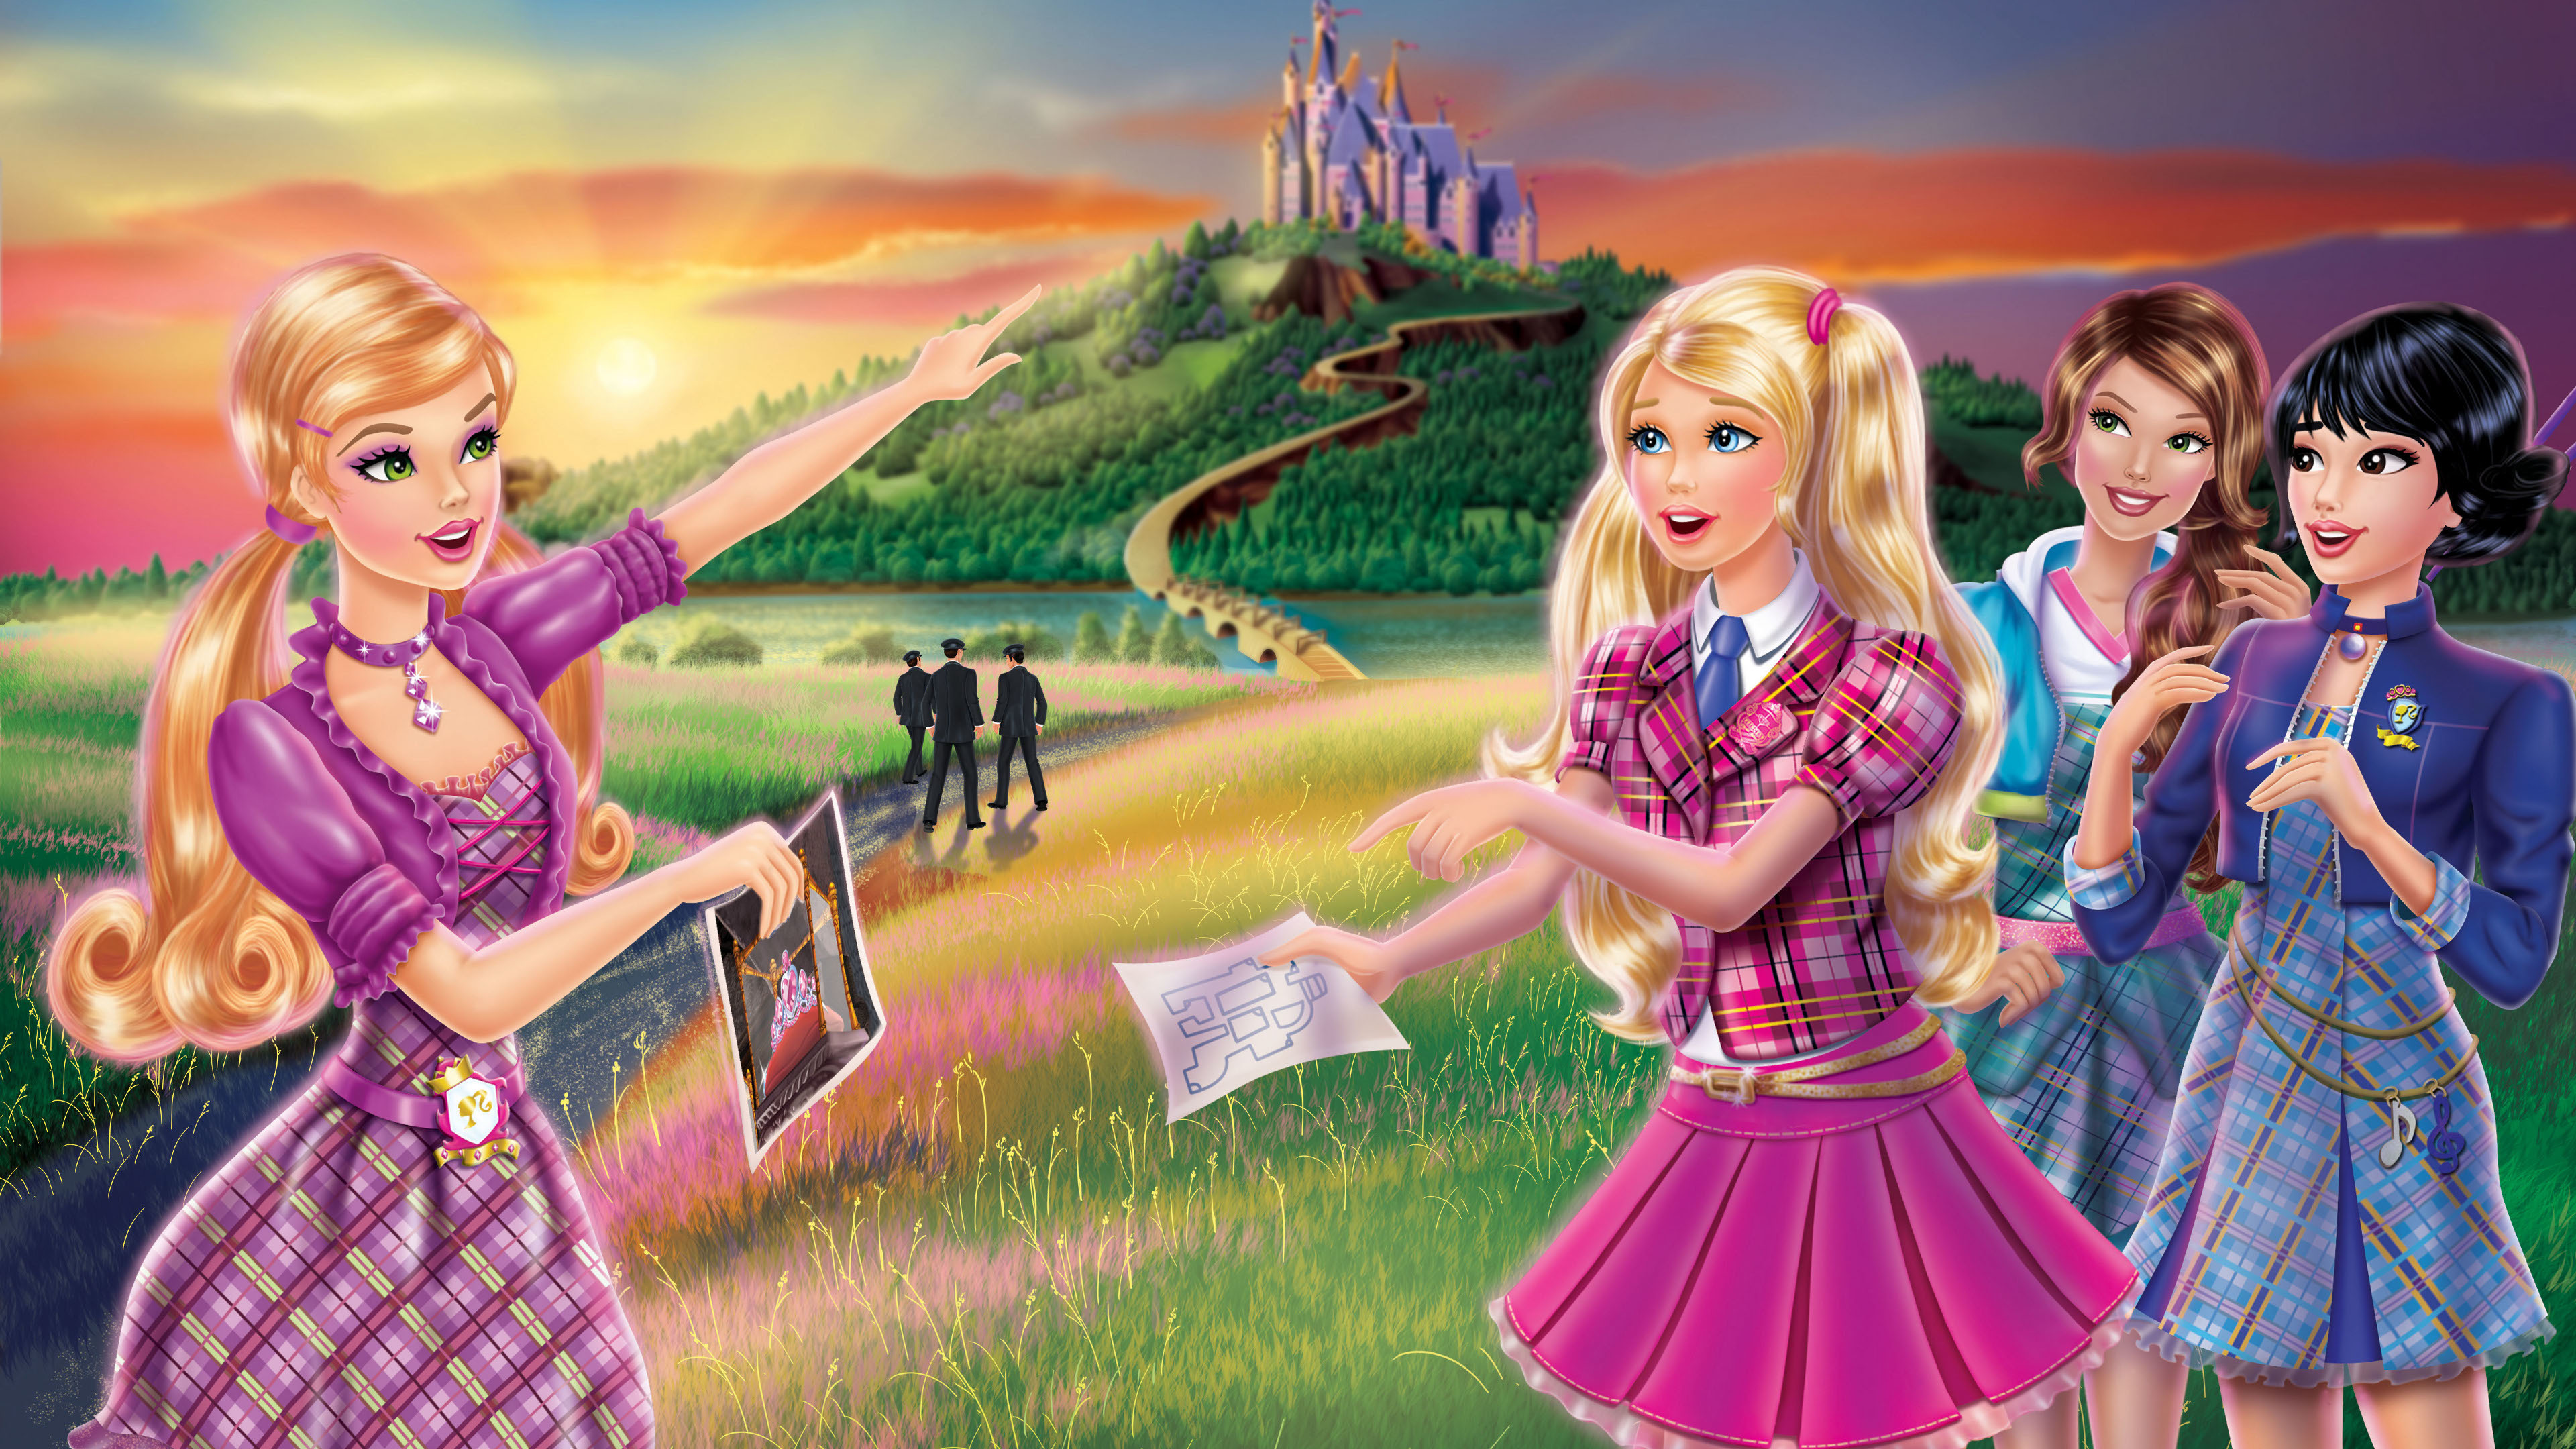 barbie és a hercegnőképző